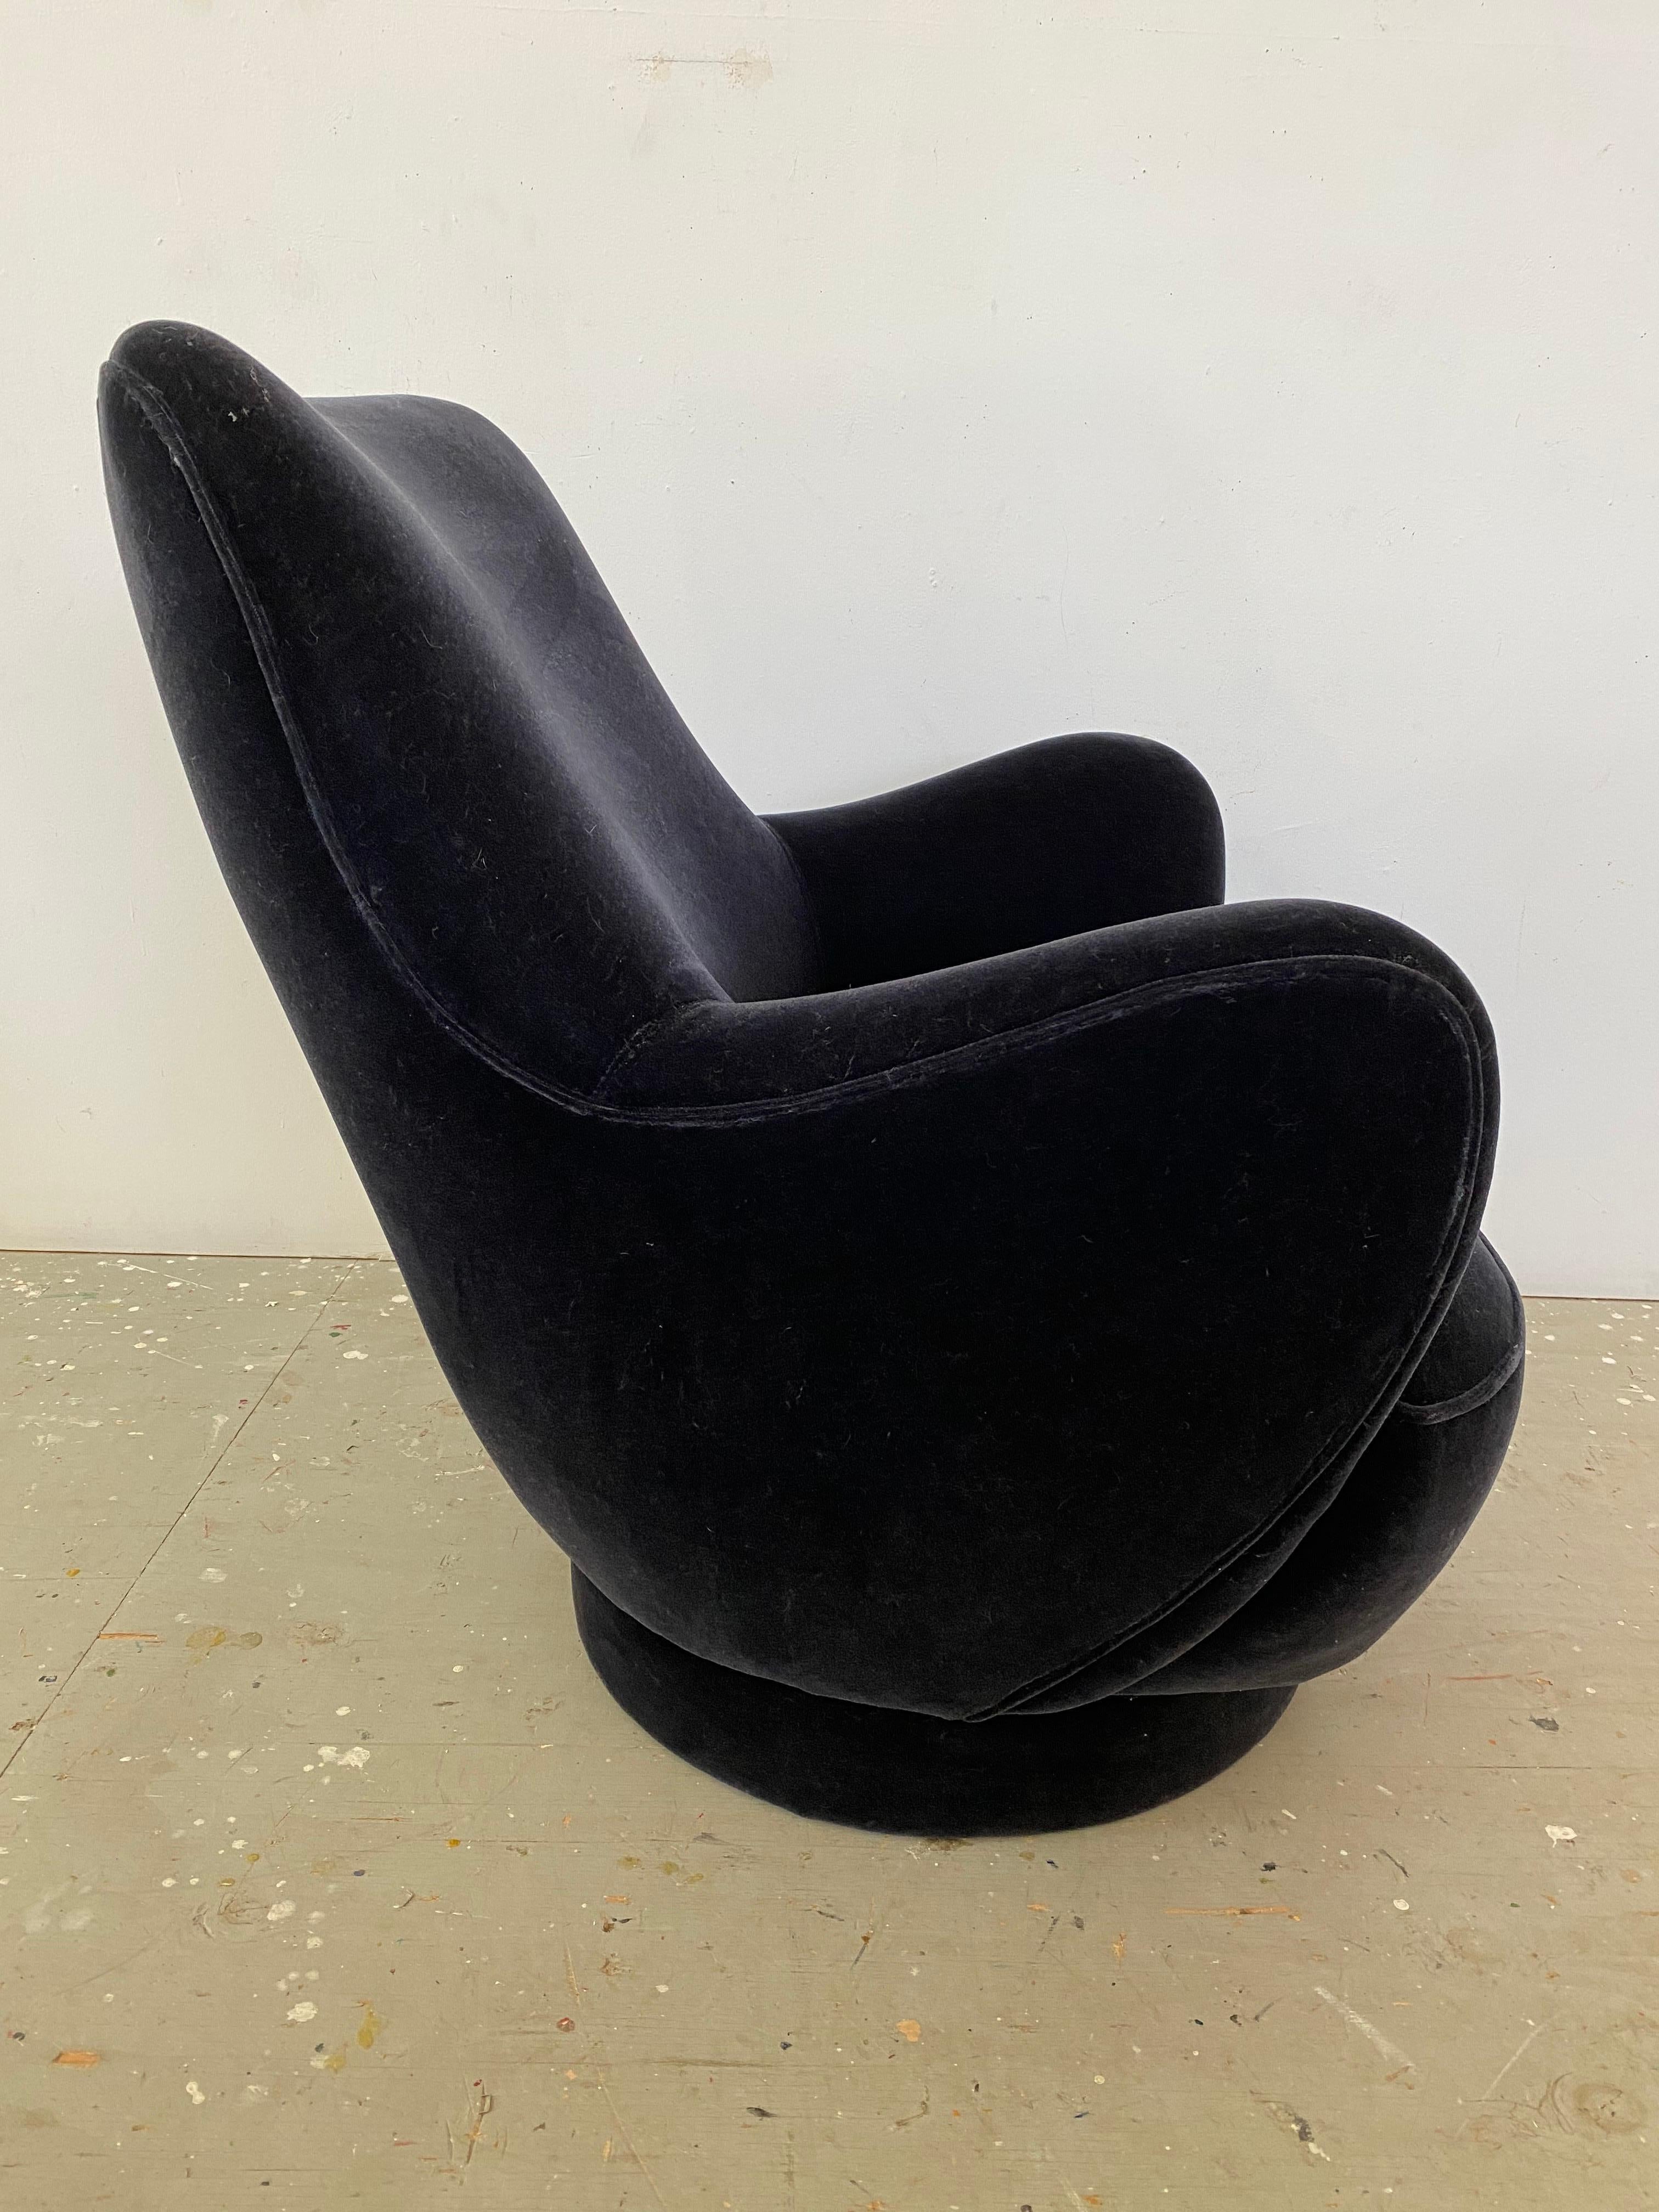 Vladimir Kagan für Directional High-Back Swivel Lounge Chair aus dunkelblauem Mohair in Charcoal.  Eines der Signature Designs von Kagan, bekannt als die 100A-Serie.  Kagan hat das Design neu erfunden und bietet sowohl Modelle mit niedriger als auch